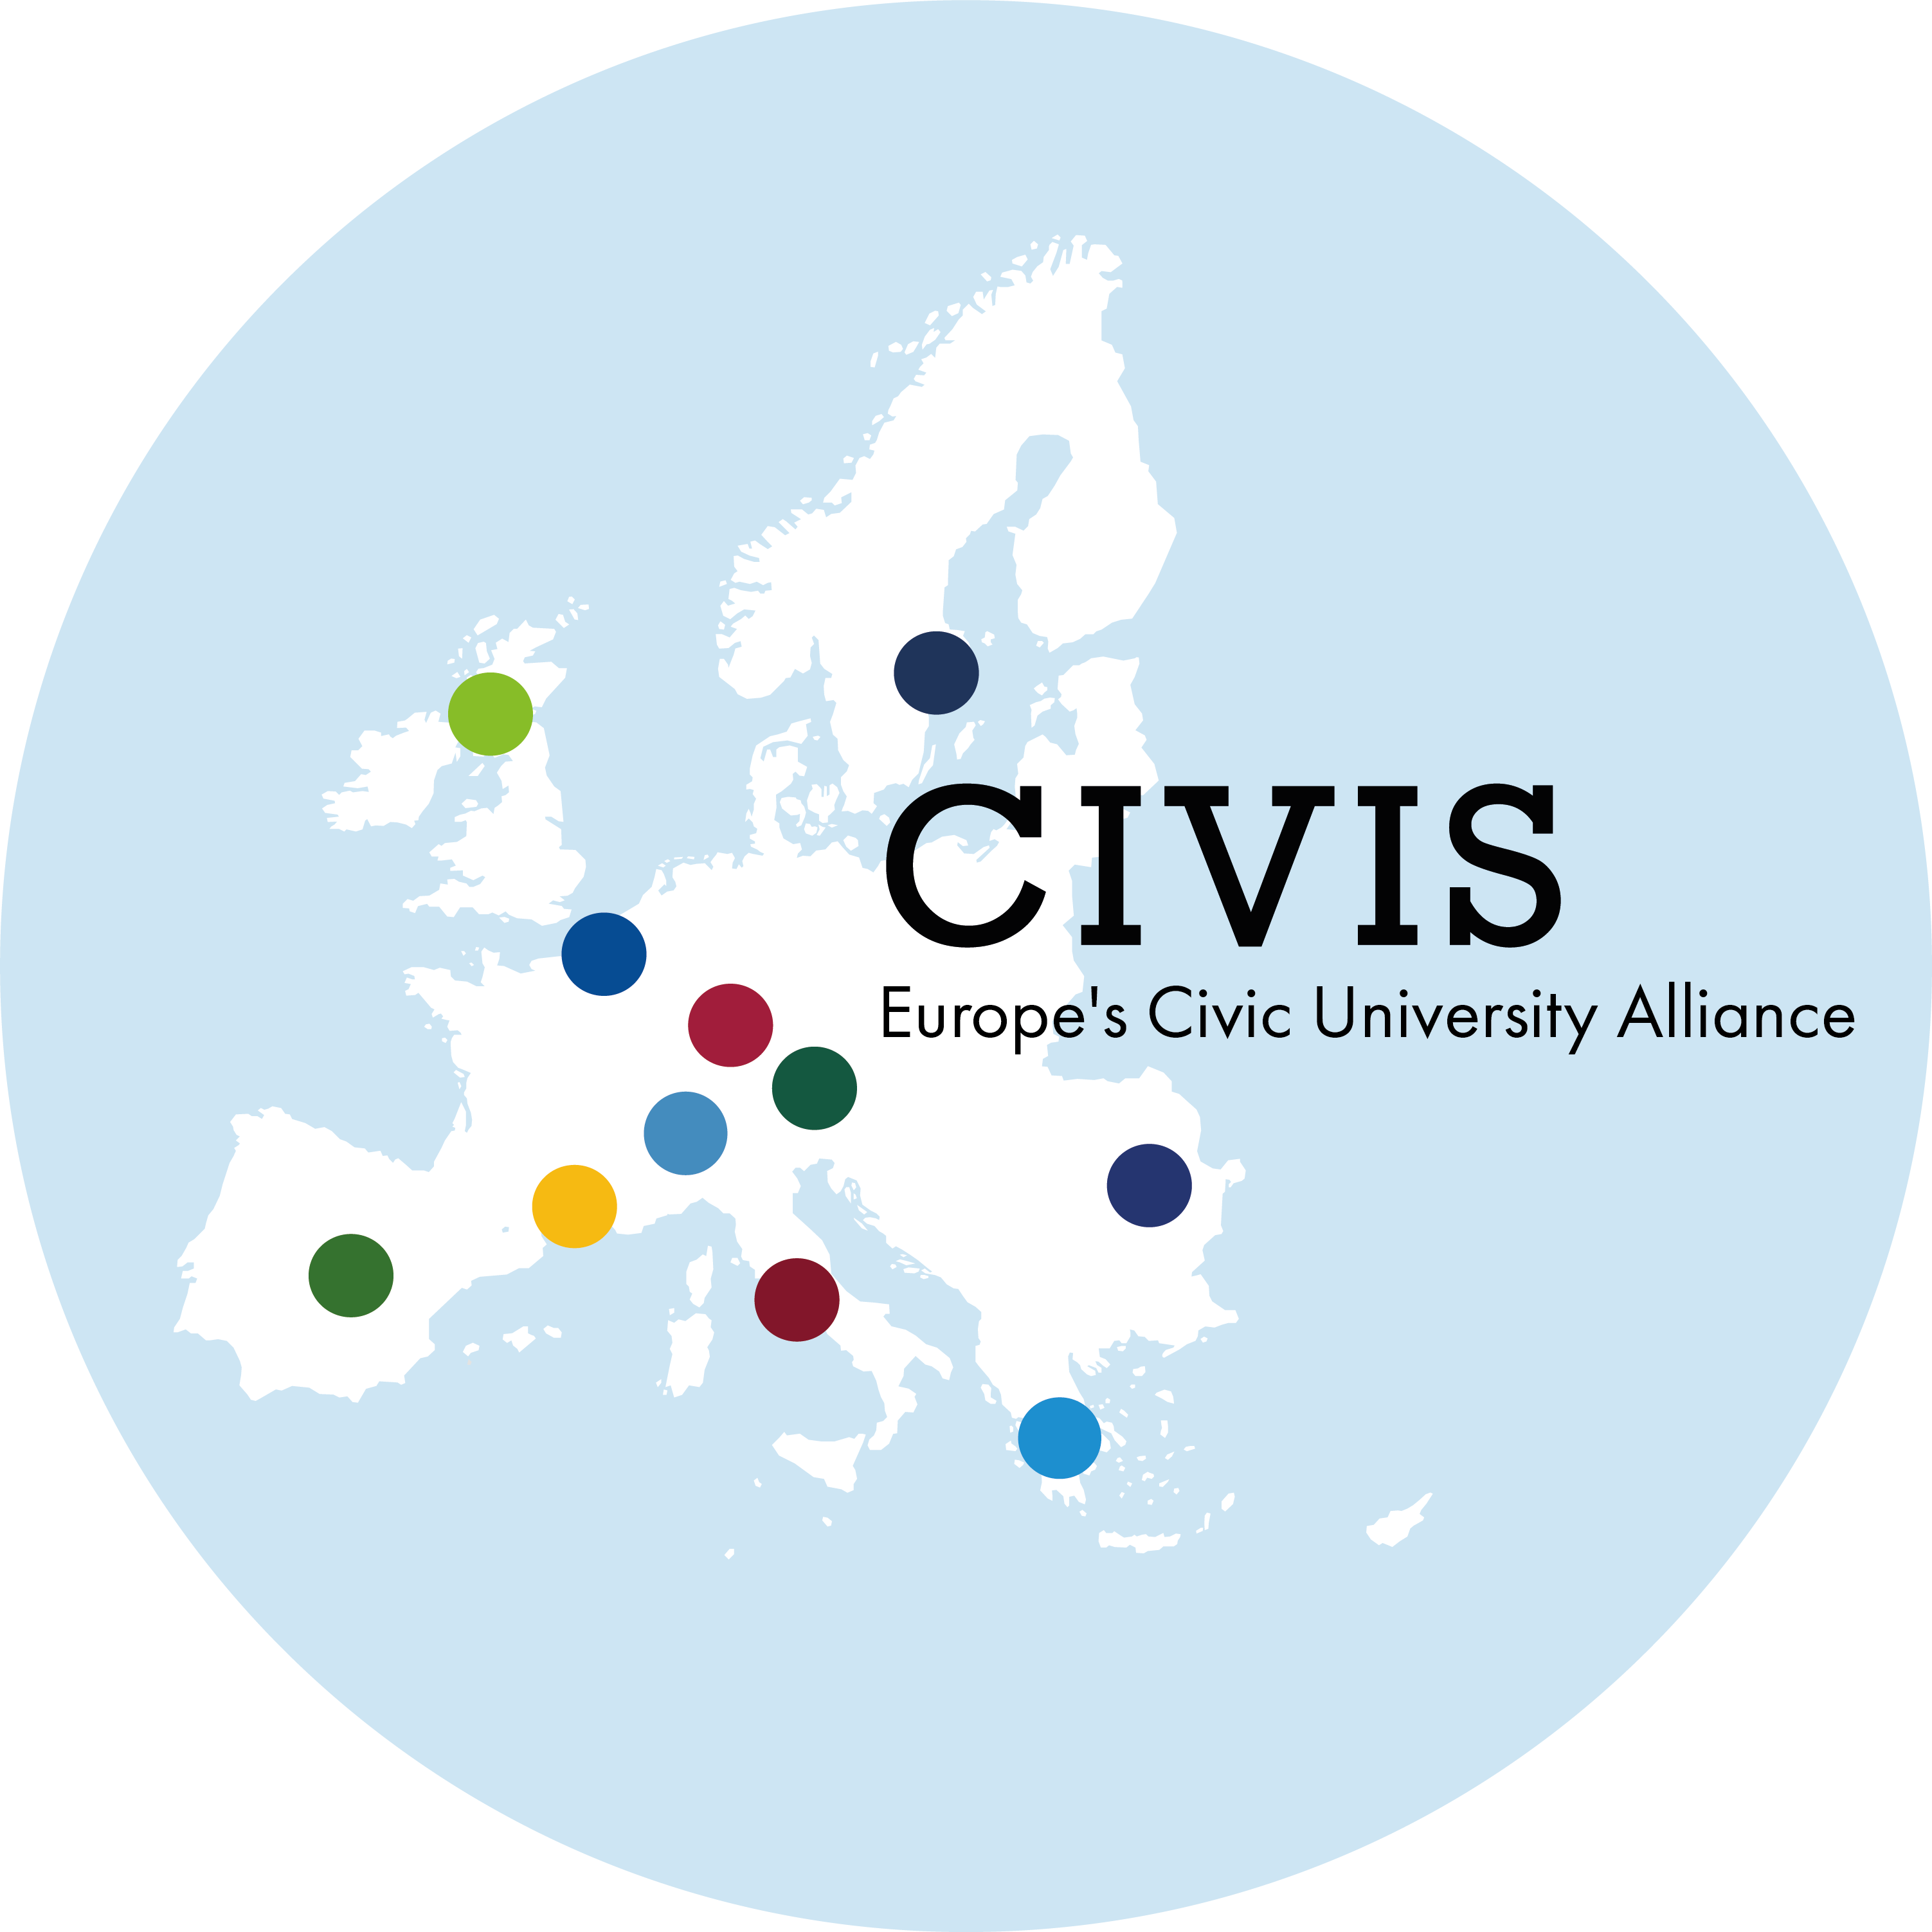 Logo de CIVIS con mapa de Europa, puntos de colores señalando las ubicaciones de las universidades miembro de la Alianza, y texto que indica CIVIS, a European Civic University